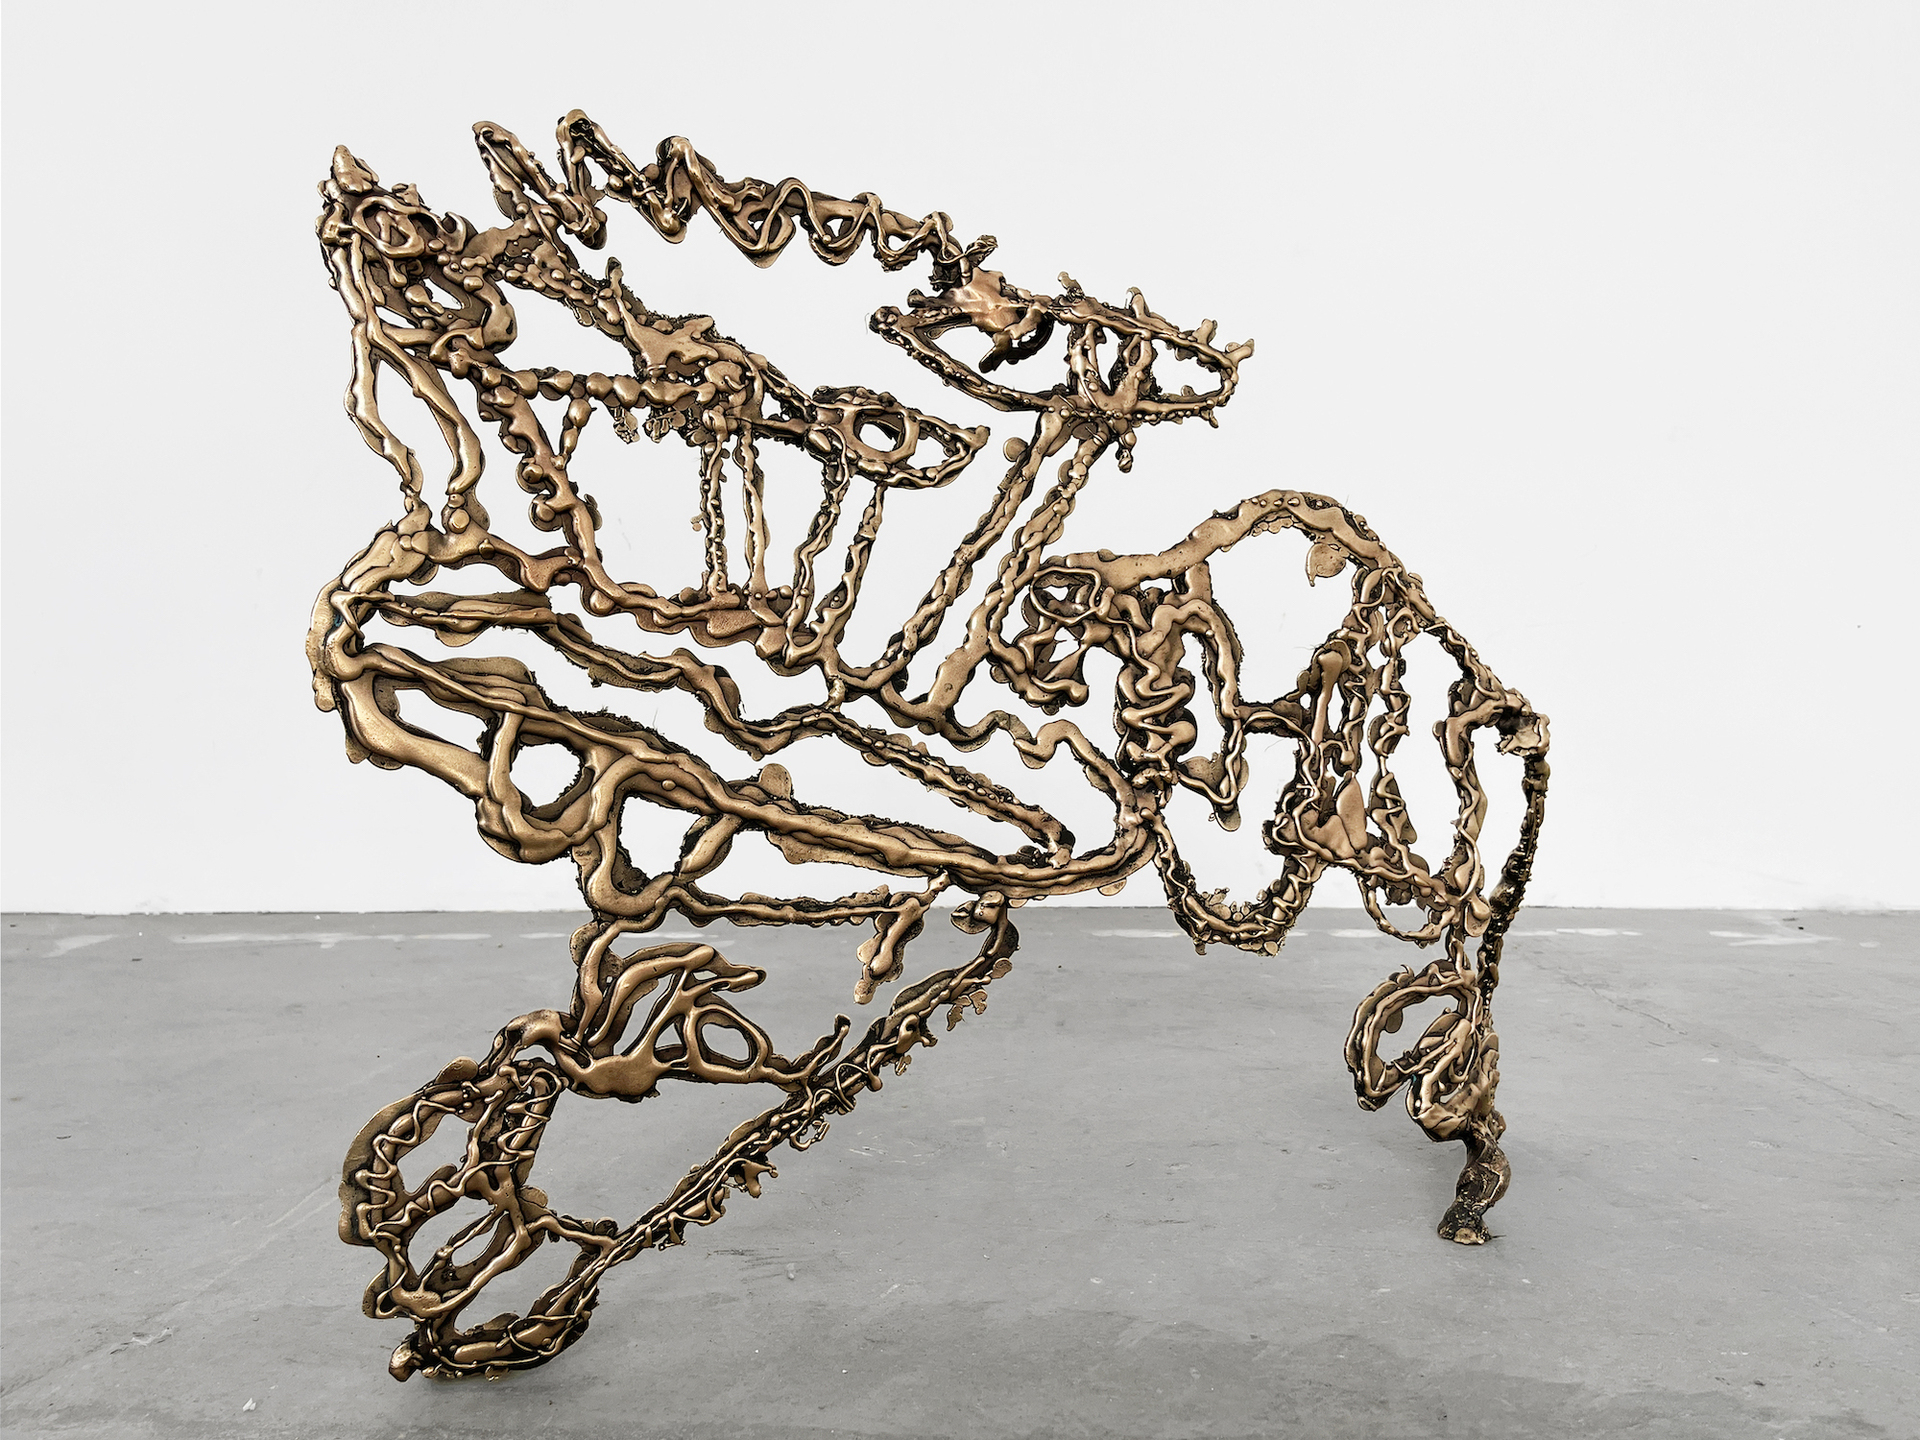 Simone Zaccagnini, Of Dogs and Men, 2021, Bronze, 100 x 73 x 23 cm